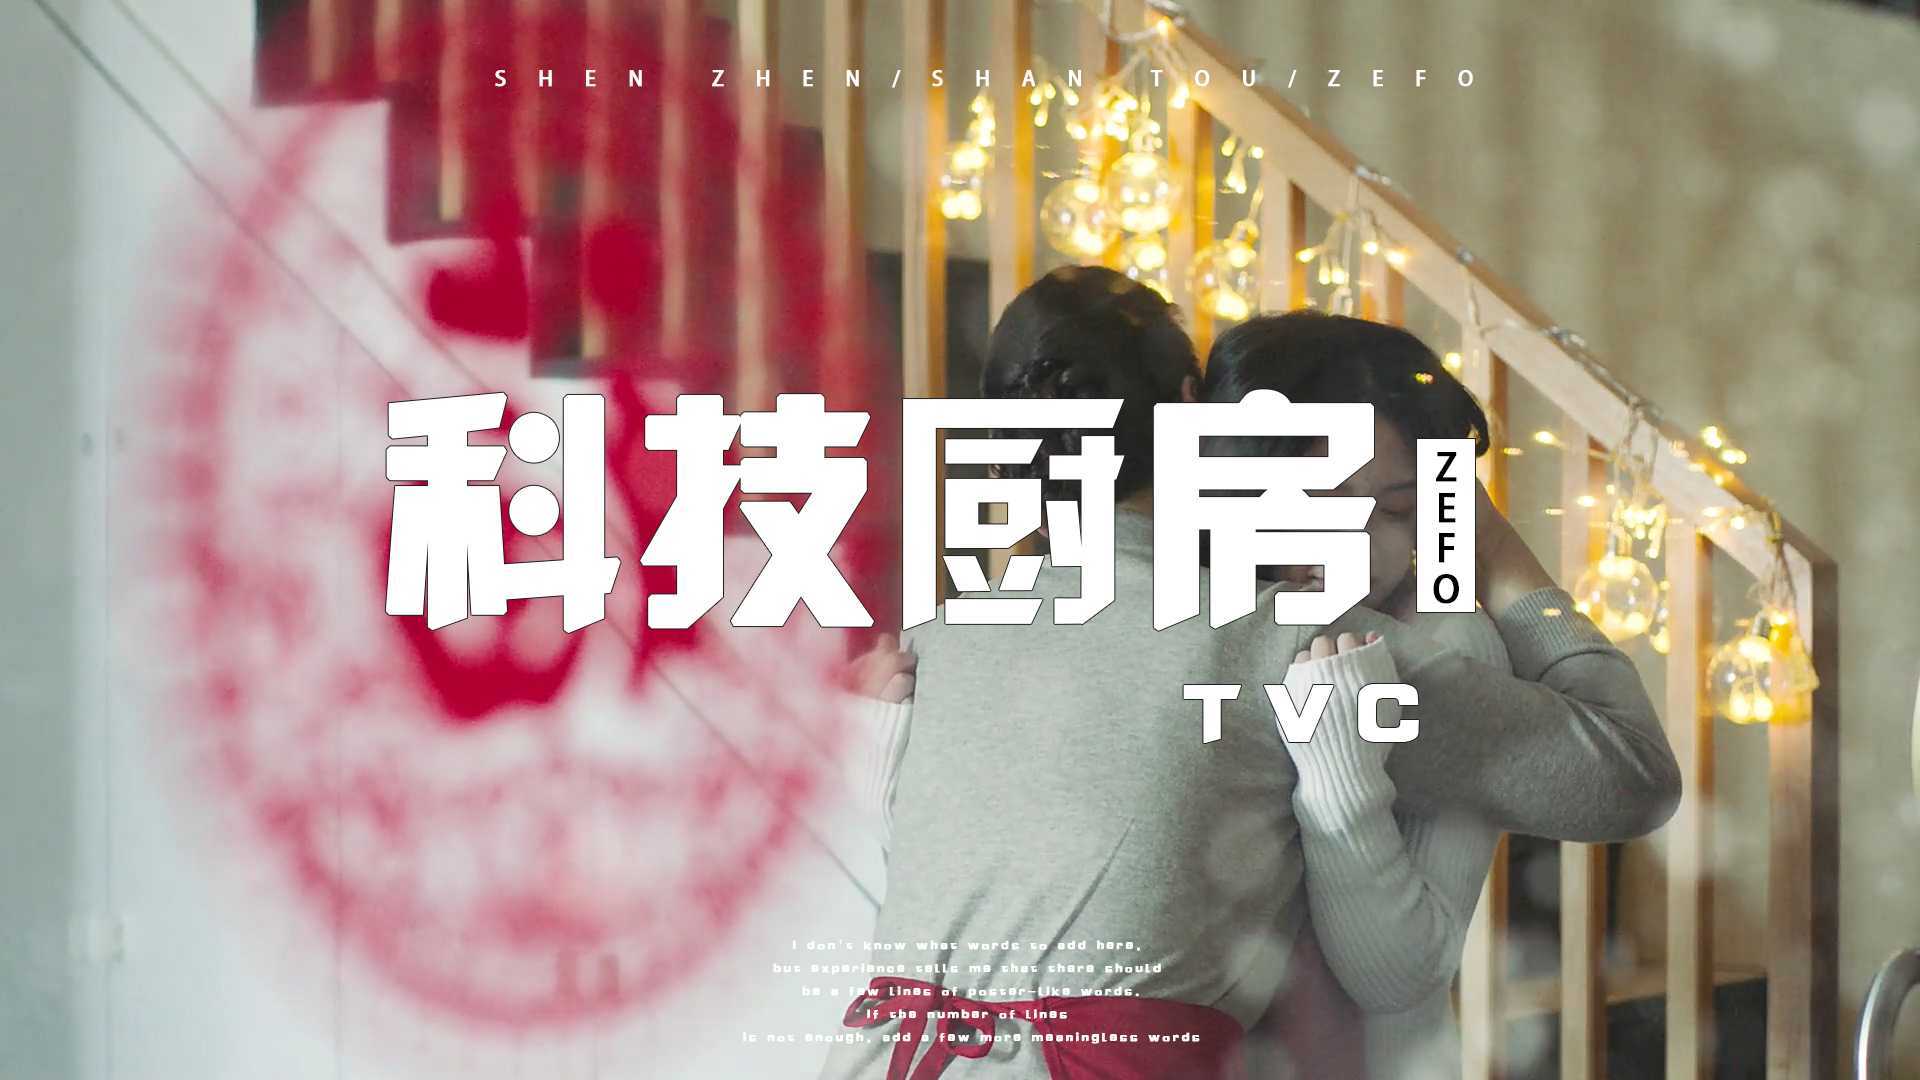 宣传片-科技厨房-TVC品牌调性ZEFO